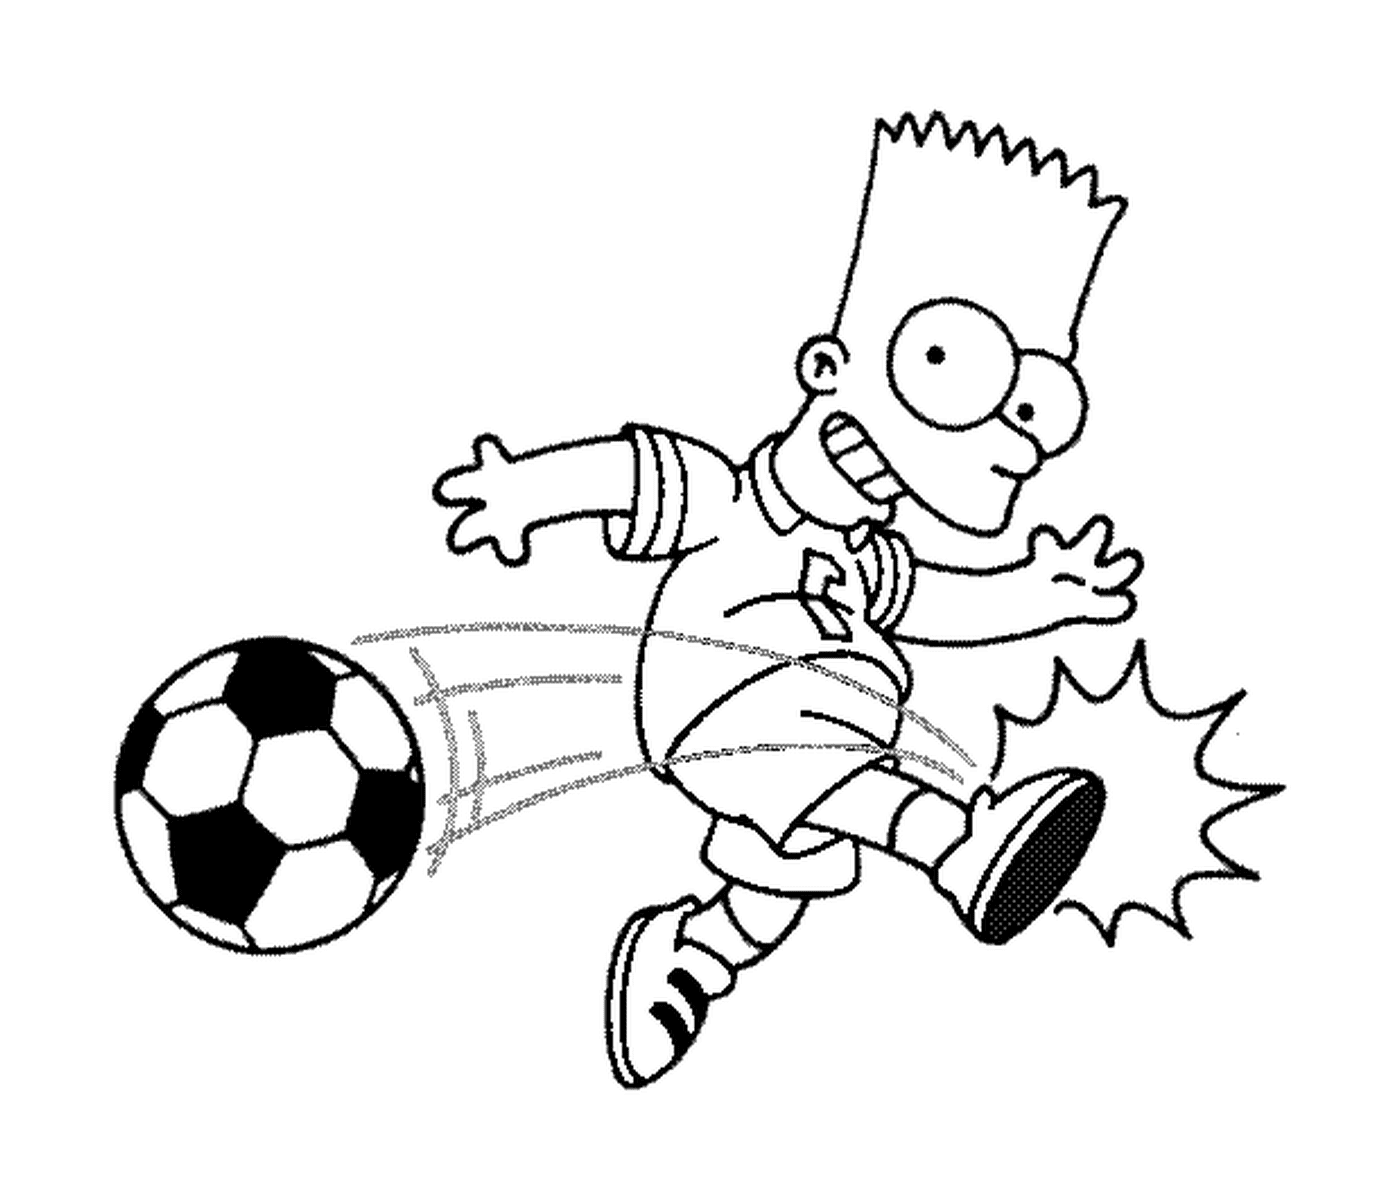  Барт бьет по мячу 